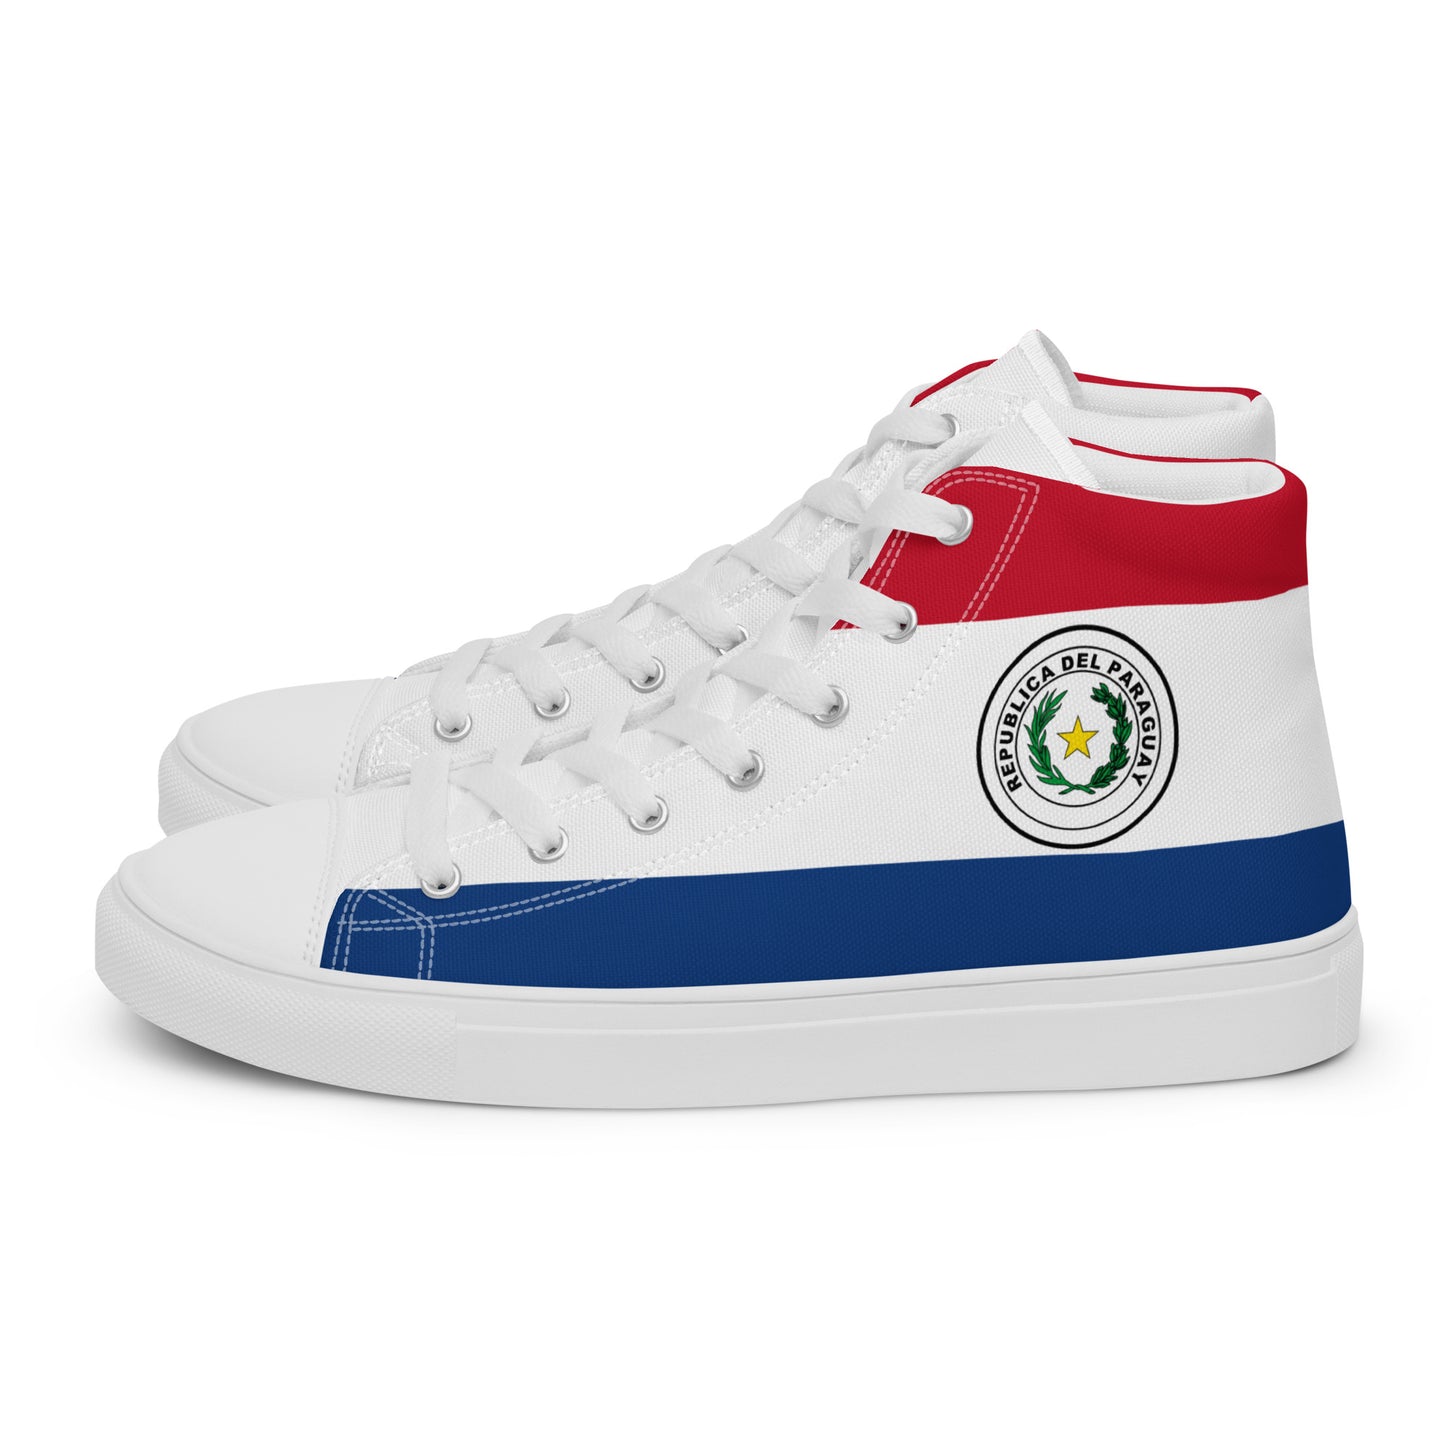 Paraguay - Women - Bandera - High top shoes